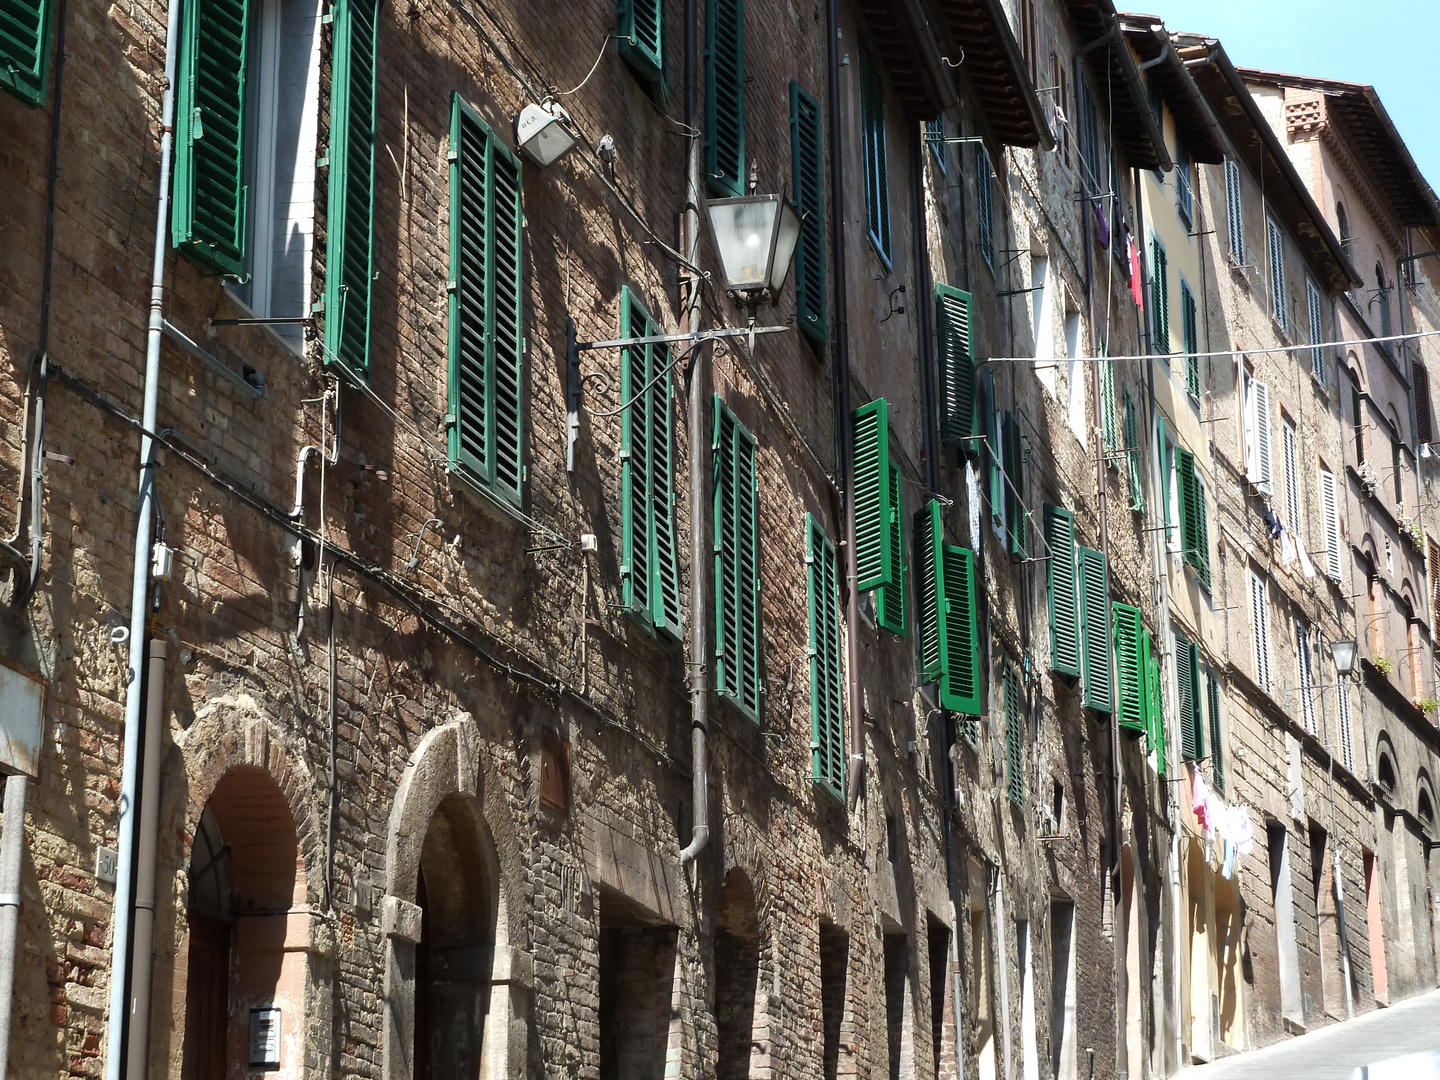 Häuserreihe in Siena